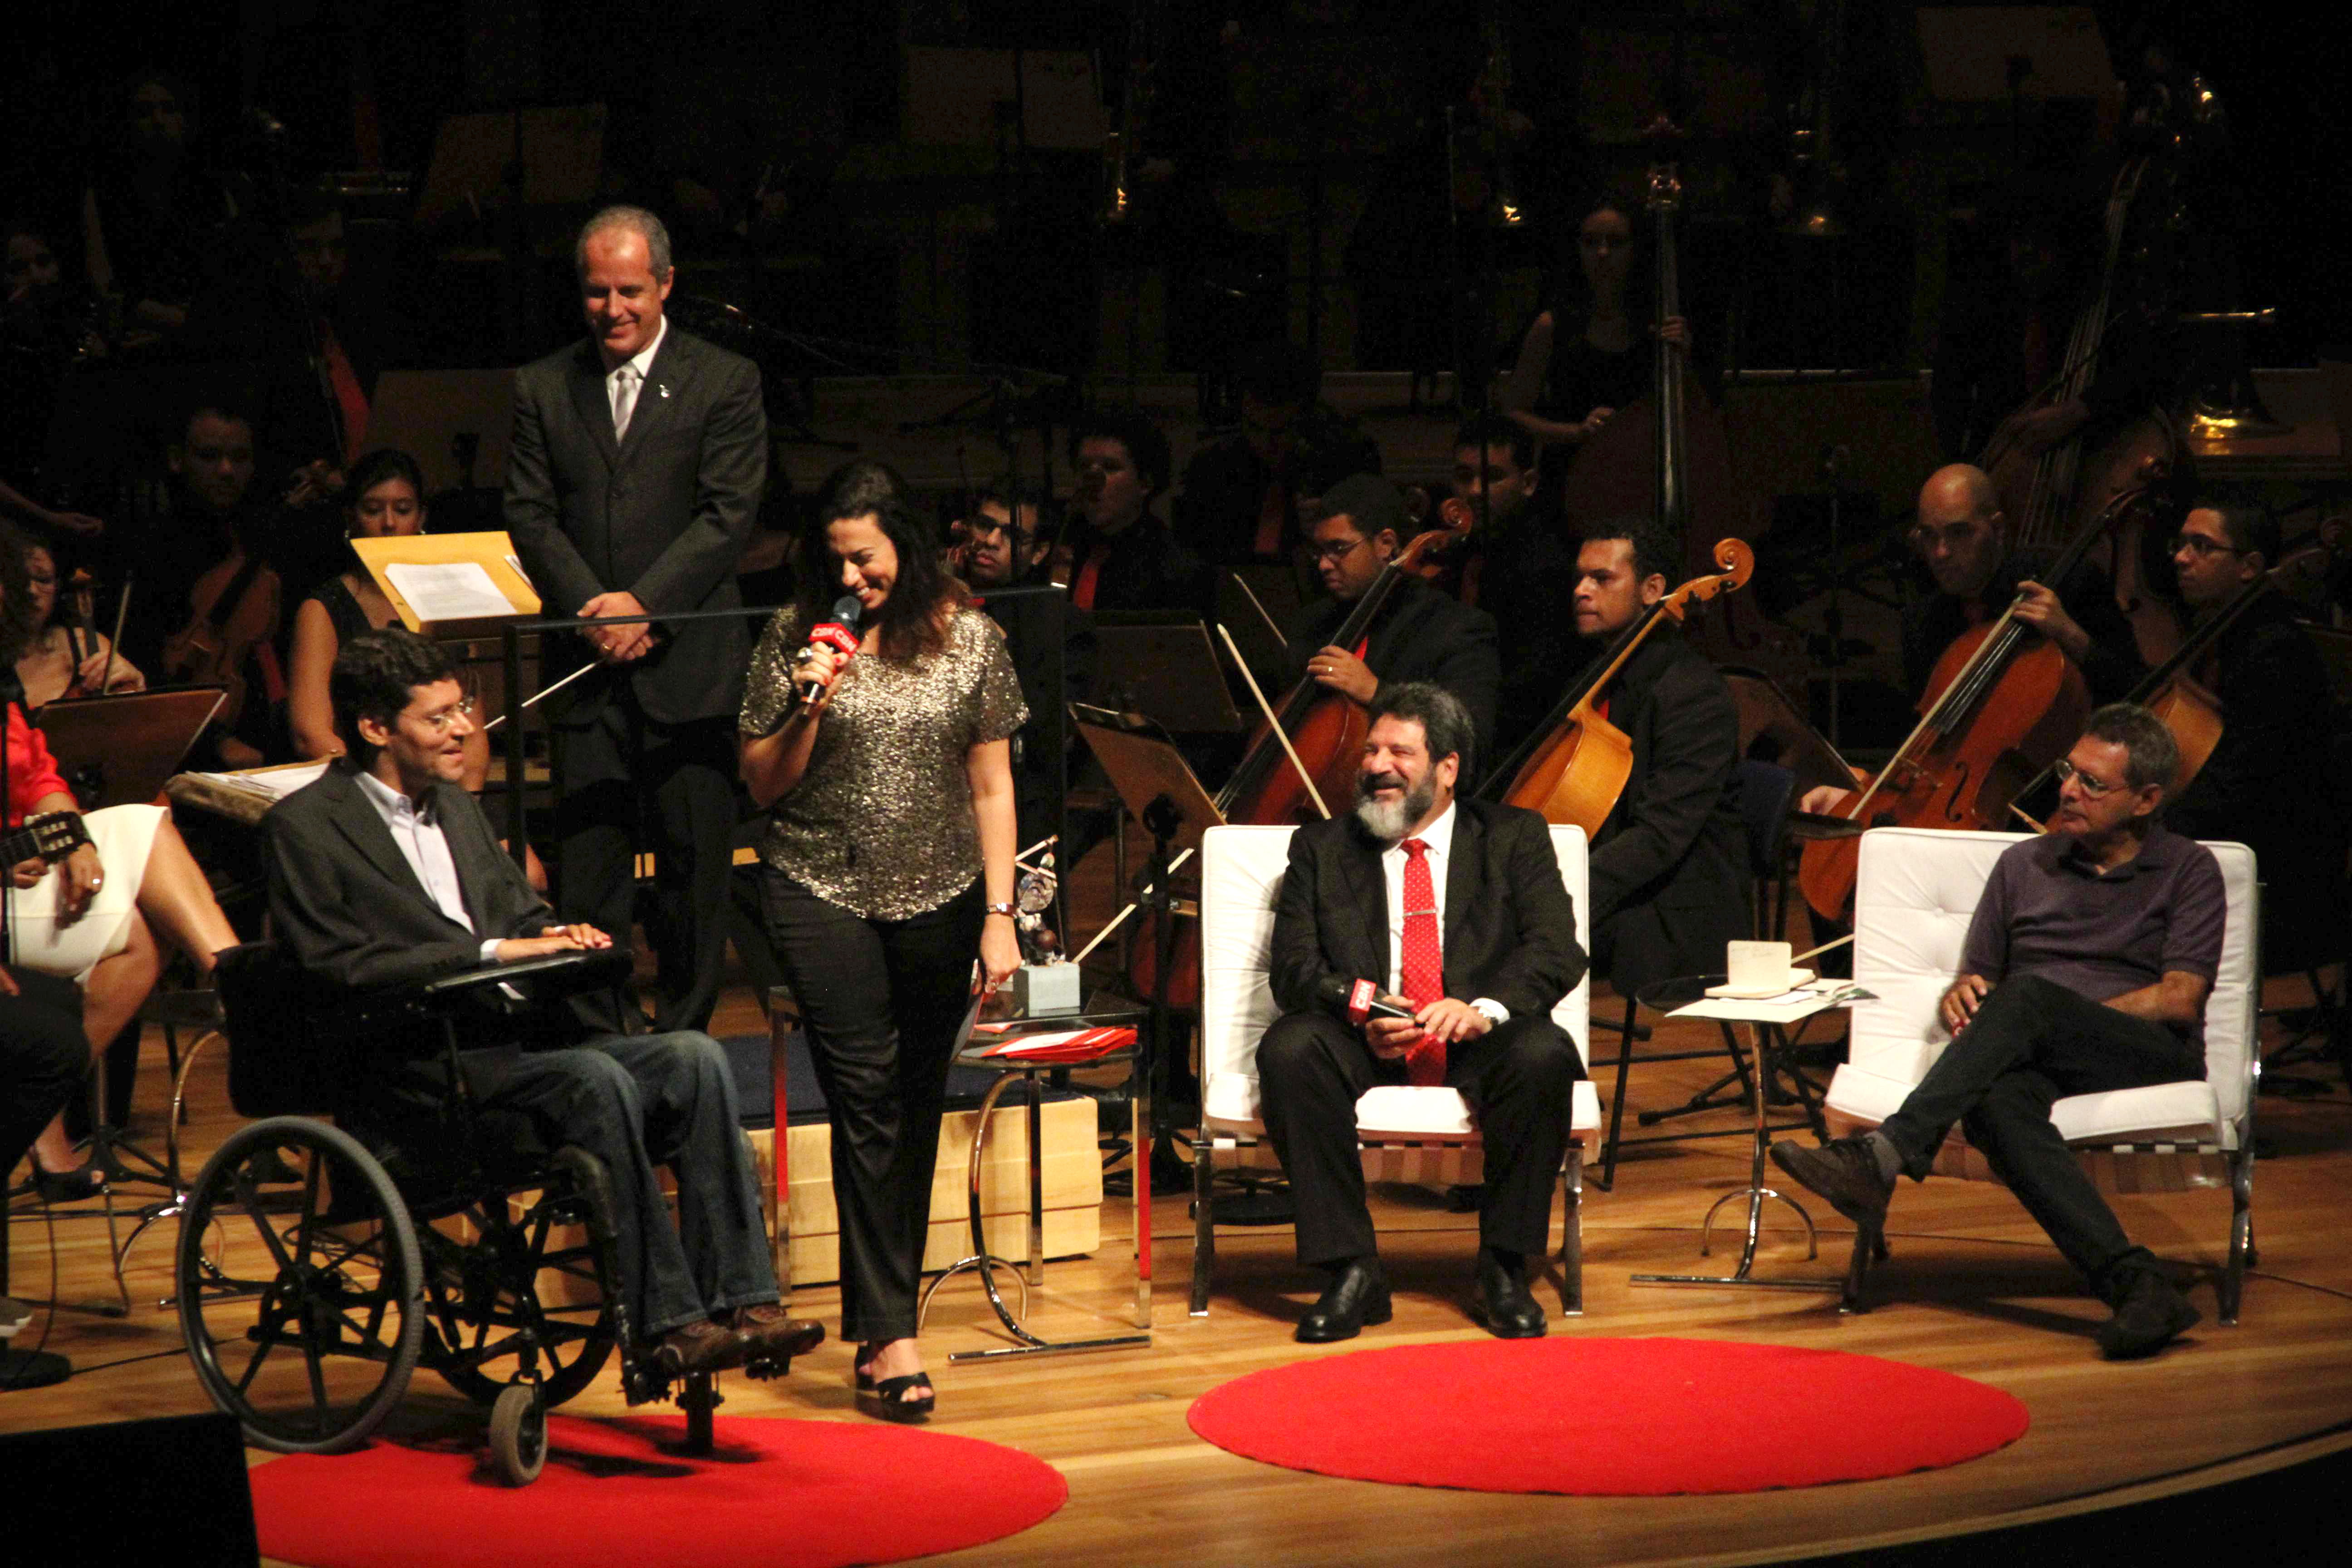 Em um palco, Rodrigo em sua cadeira de rodas, está ao lado de mulher que segura microfone. Ao lado direito da imagem, dois homens sentados em poltronas. Ao fundo maestro e orquestra. Todos sorriem e olham para Rodrigo.